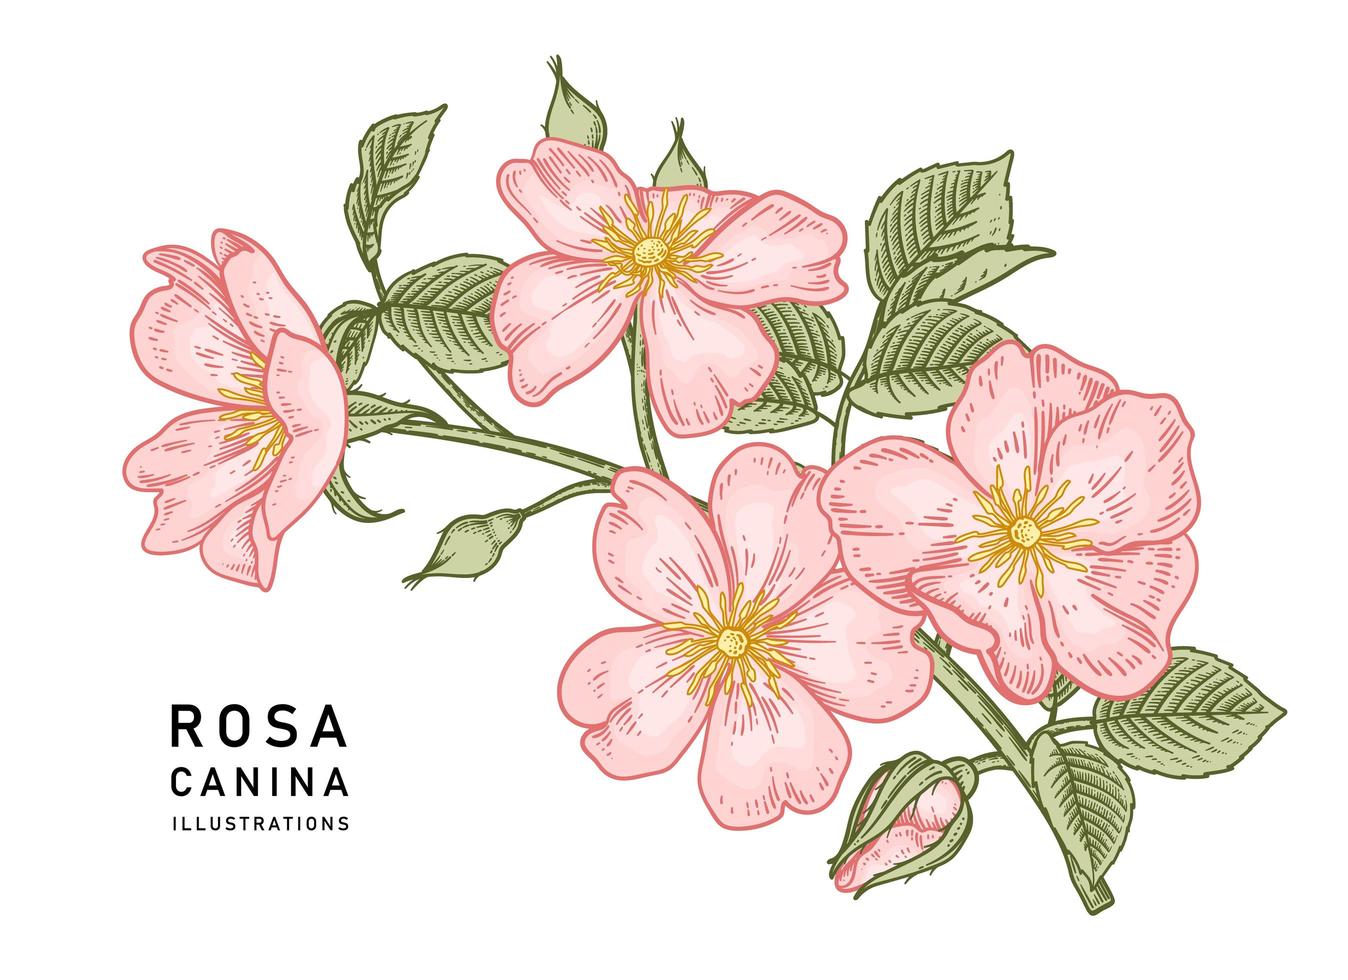 Zweig der rosa Hundrose oder der Rosa canina mit der Hand gezeichneten botanischen Illustrationen der Blume und der Blätter vektor